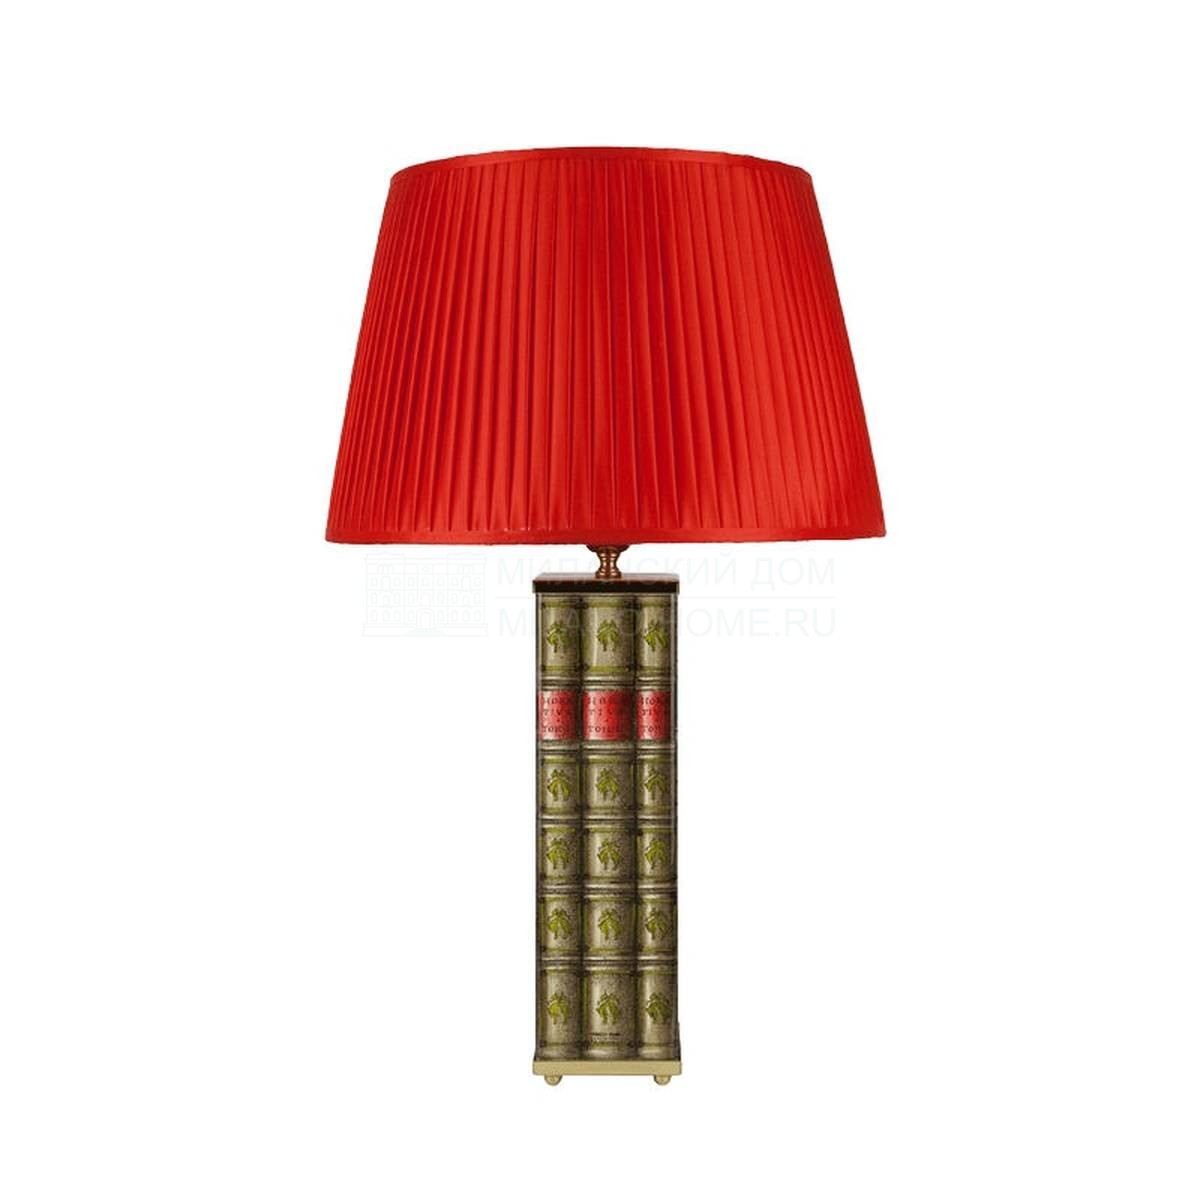 Настольная лампа Libri из Италии фабрики FORNASETTI